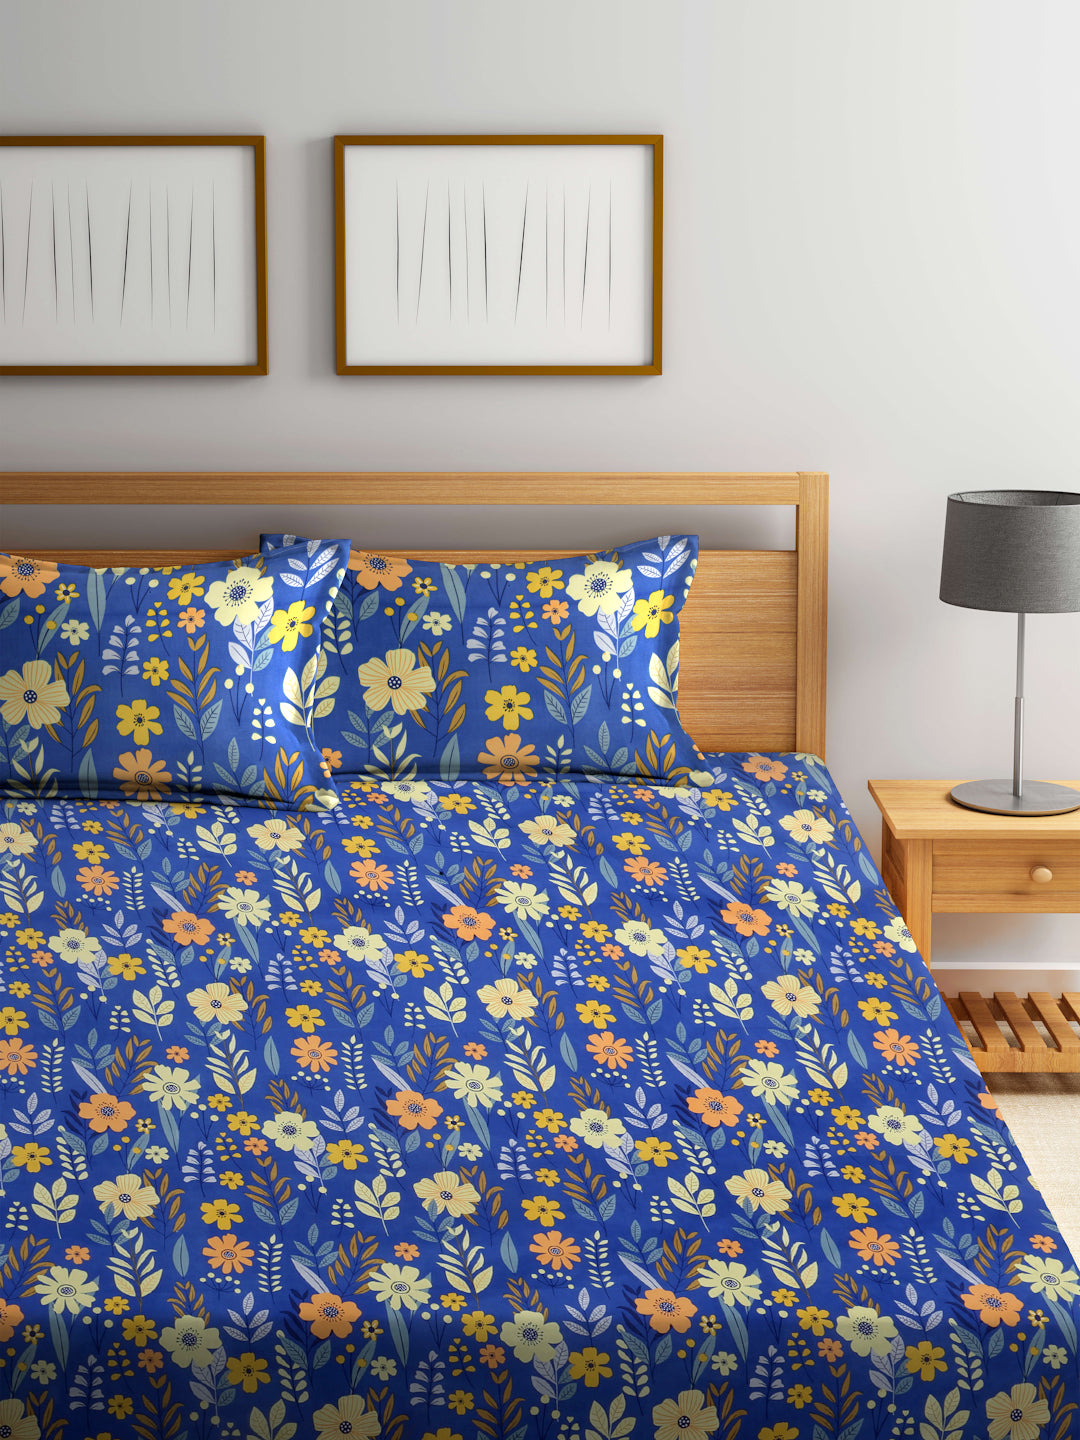 Arrabi Blue Floral TC Cotton Blend Super King Size Bedsheet with 2 Pillow Covers (270 x 260 cm)